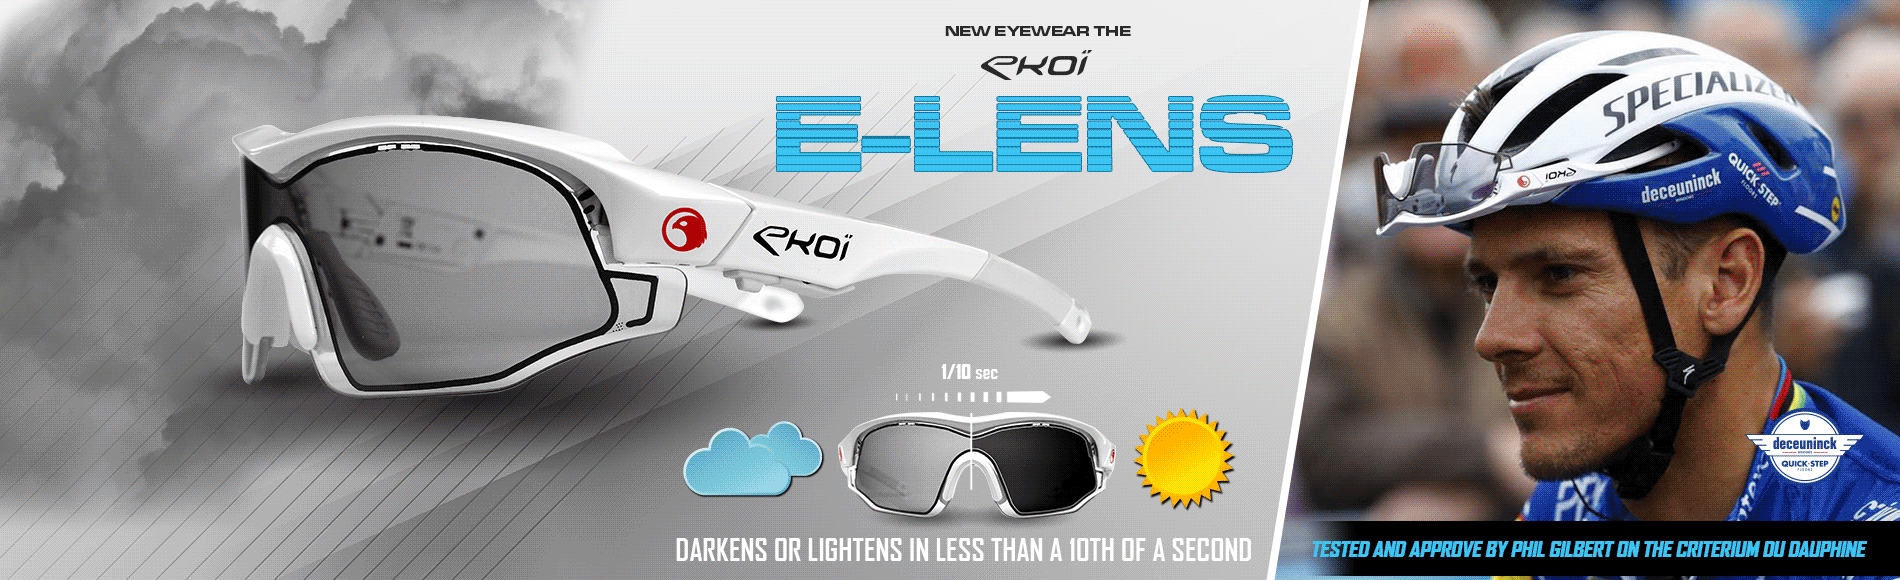 Nouvelle lunette E-LENS EKOI et son verre electronique photochromique